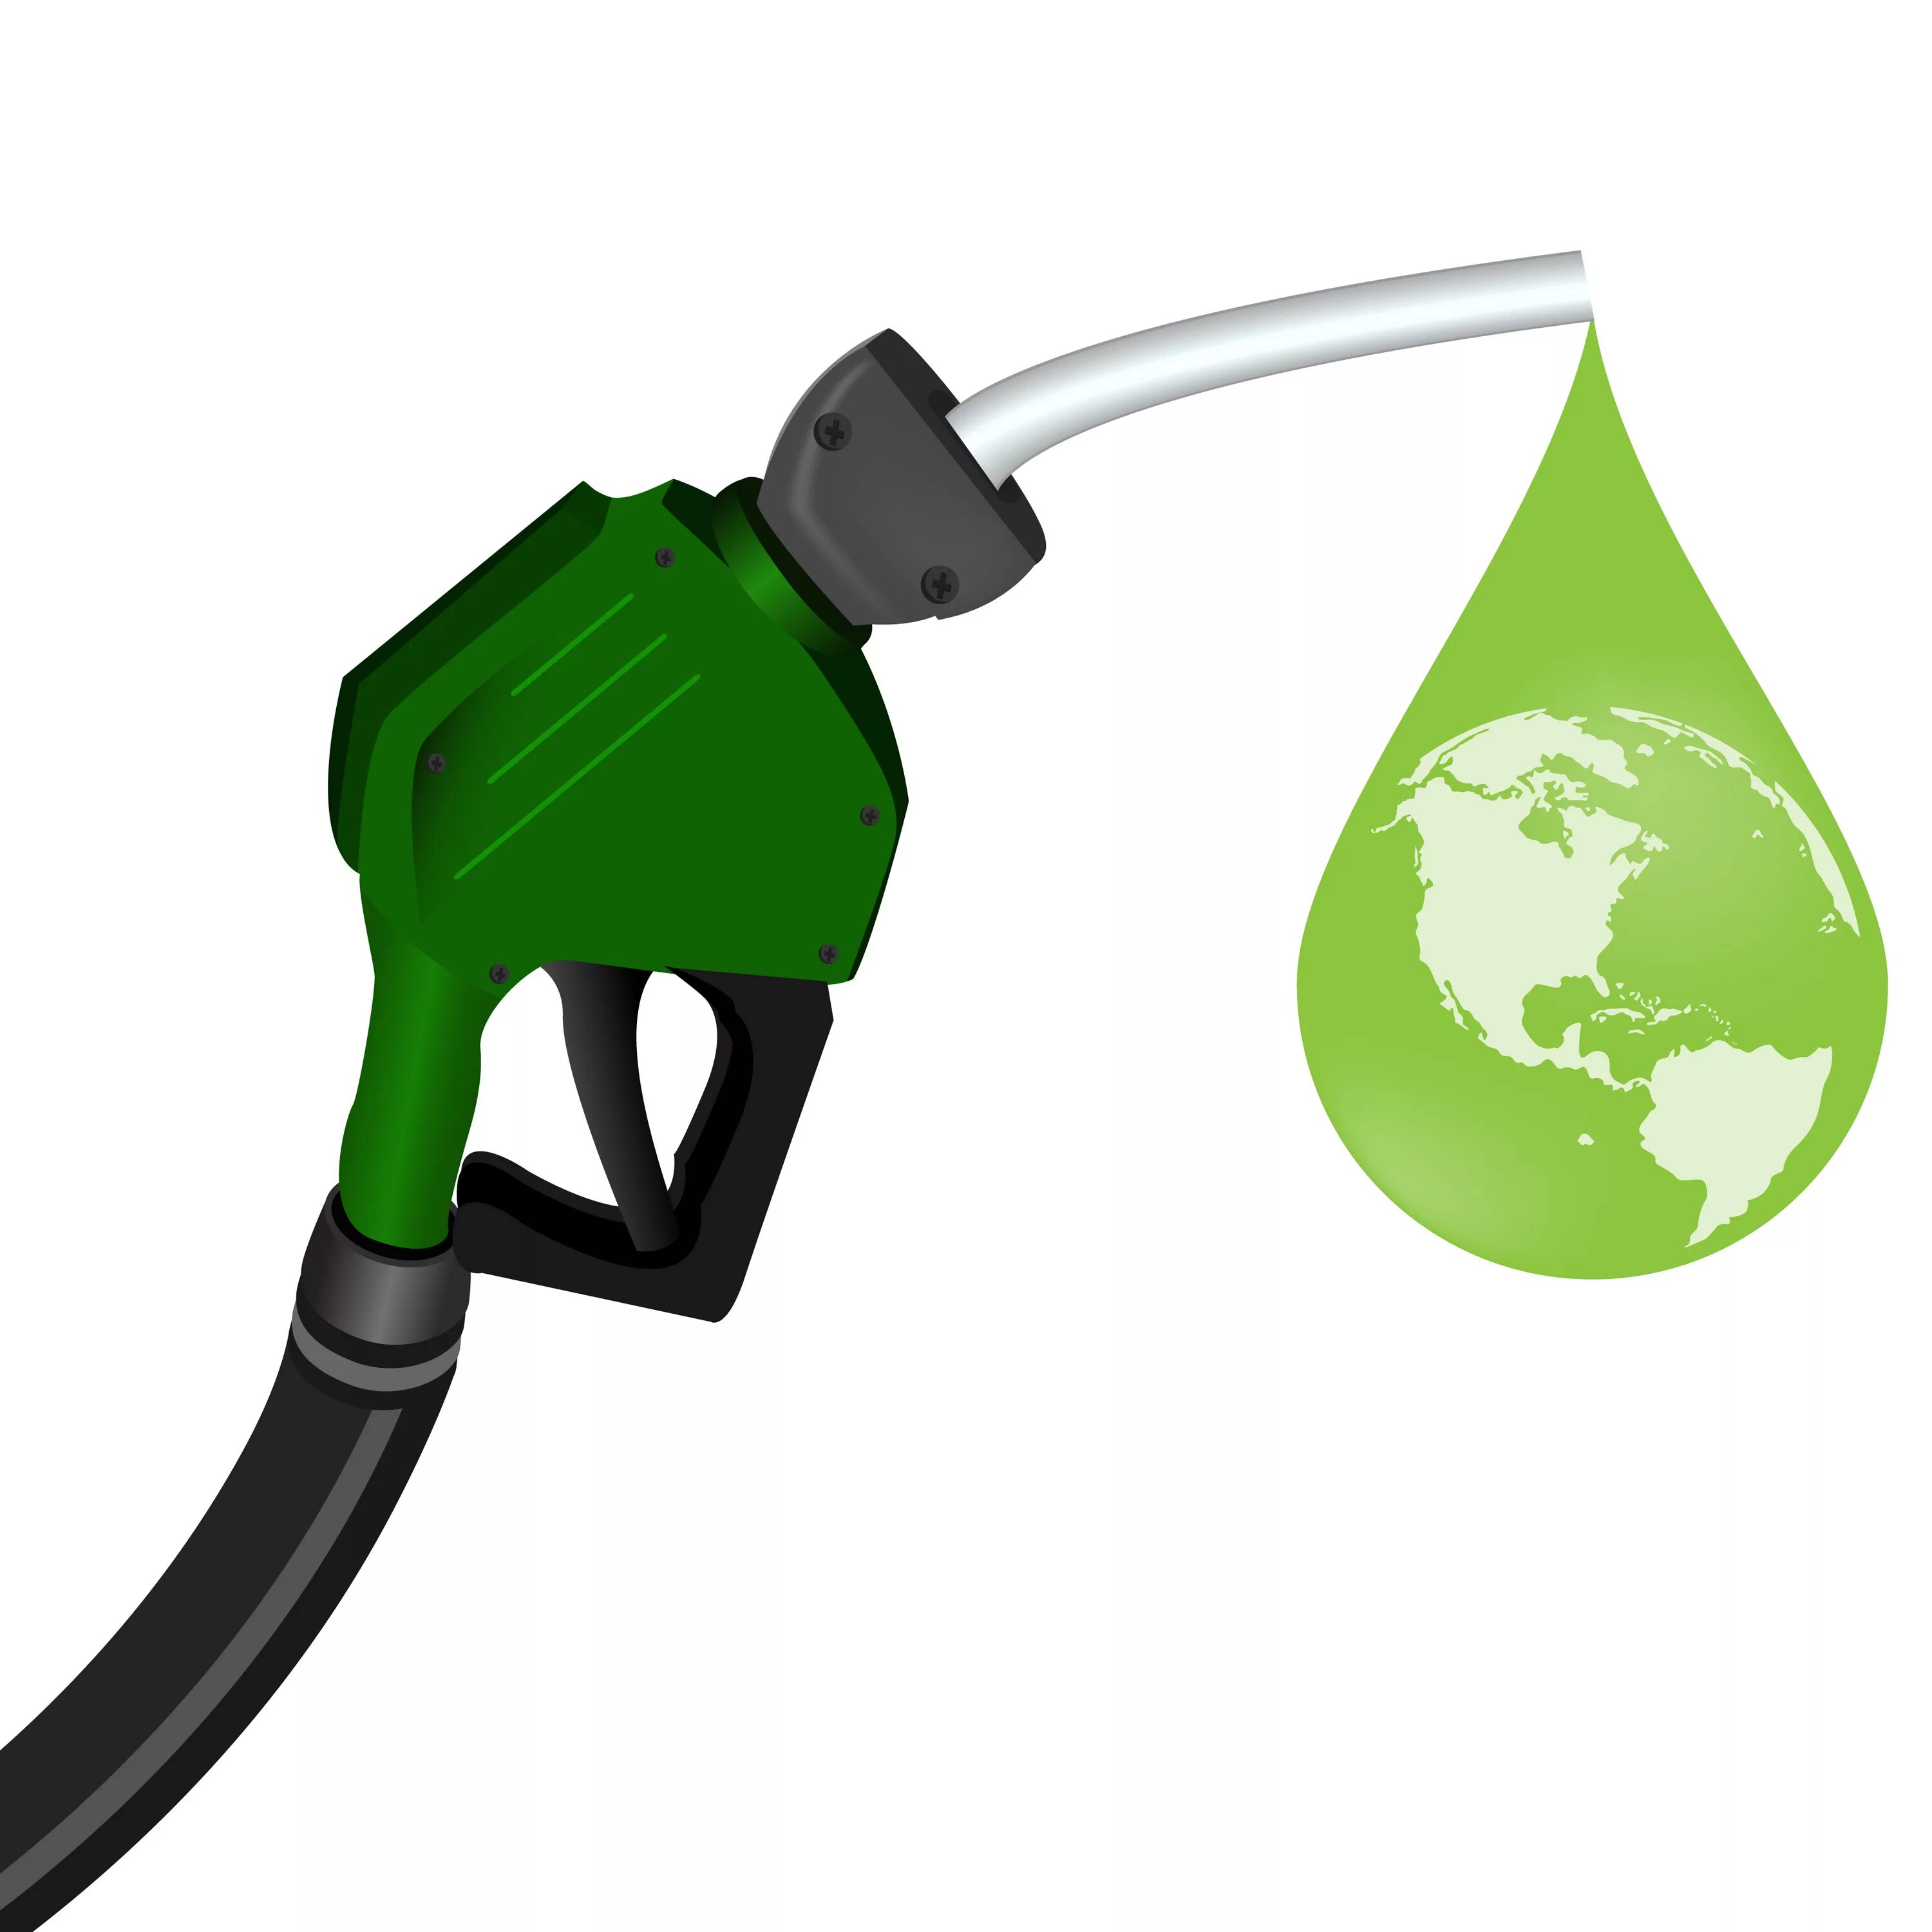 Экологическое дизельное топливо